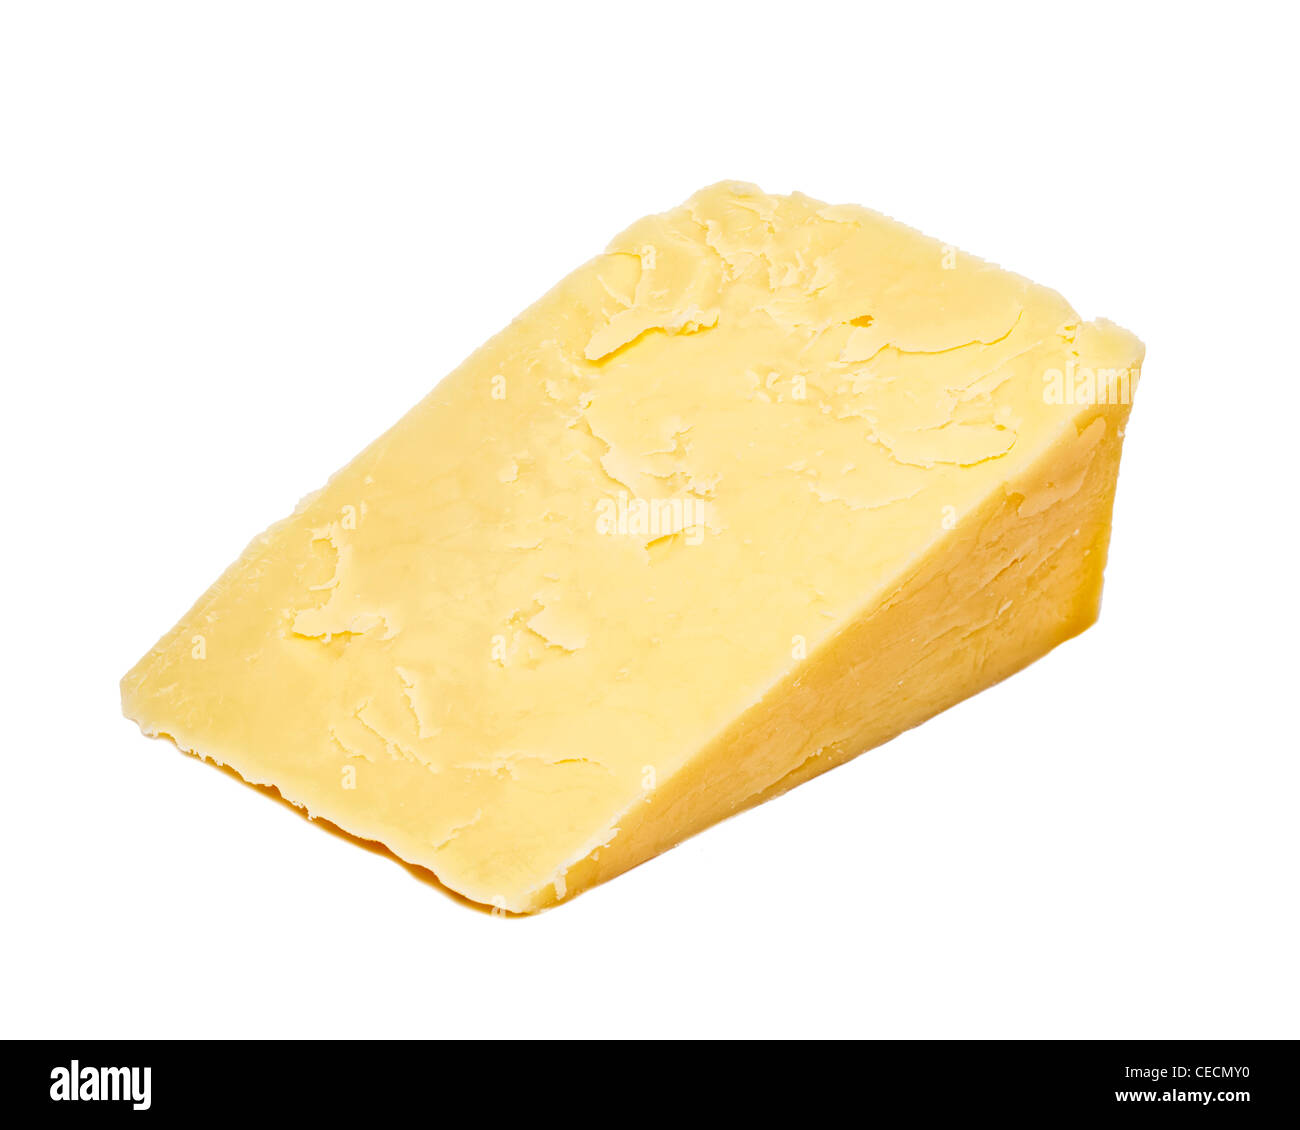 El queso Cheddar sobre fondo blanco. Foto de stock